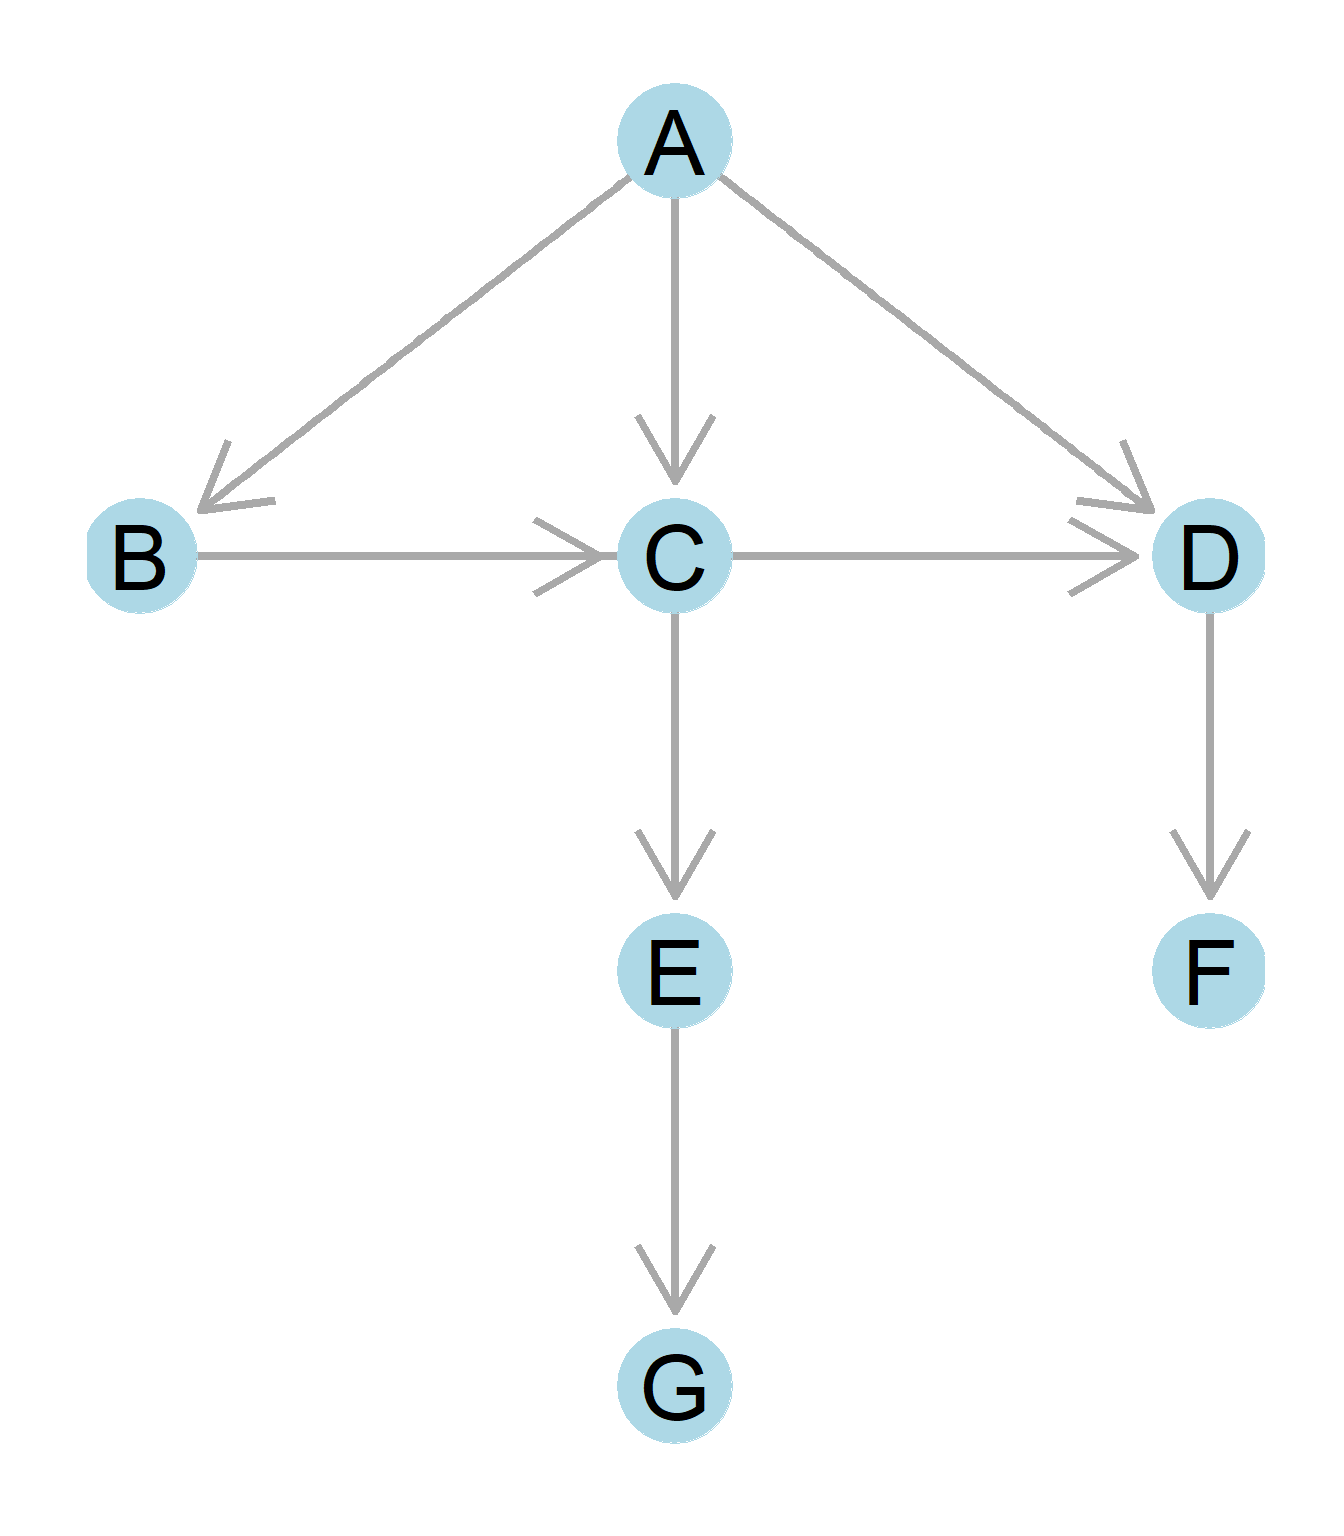 A tree graph.